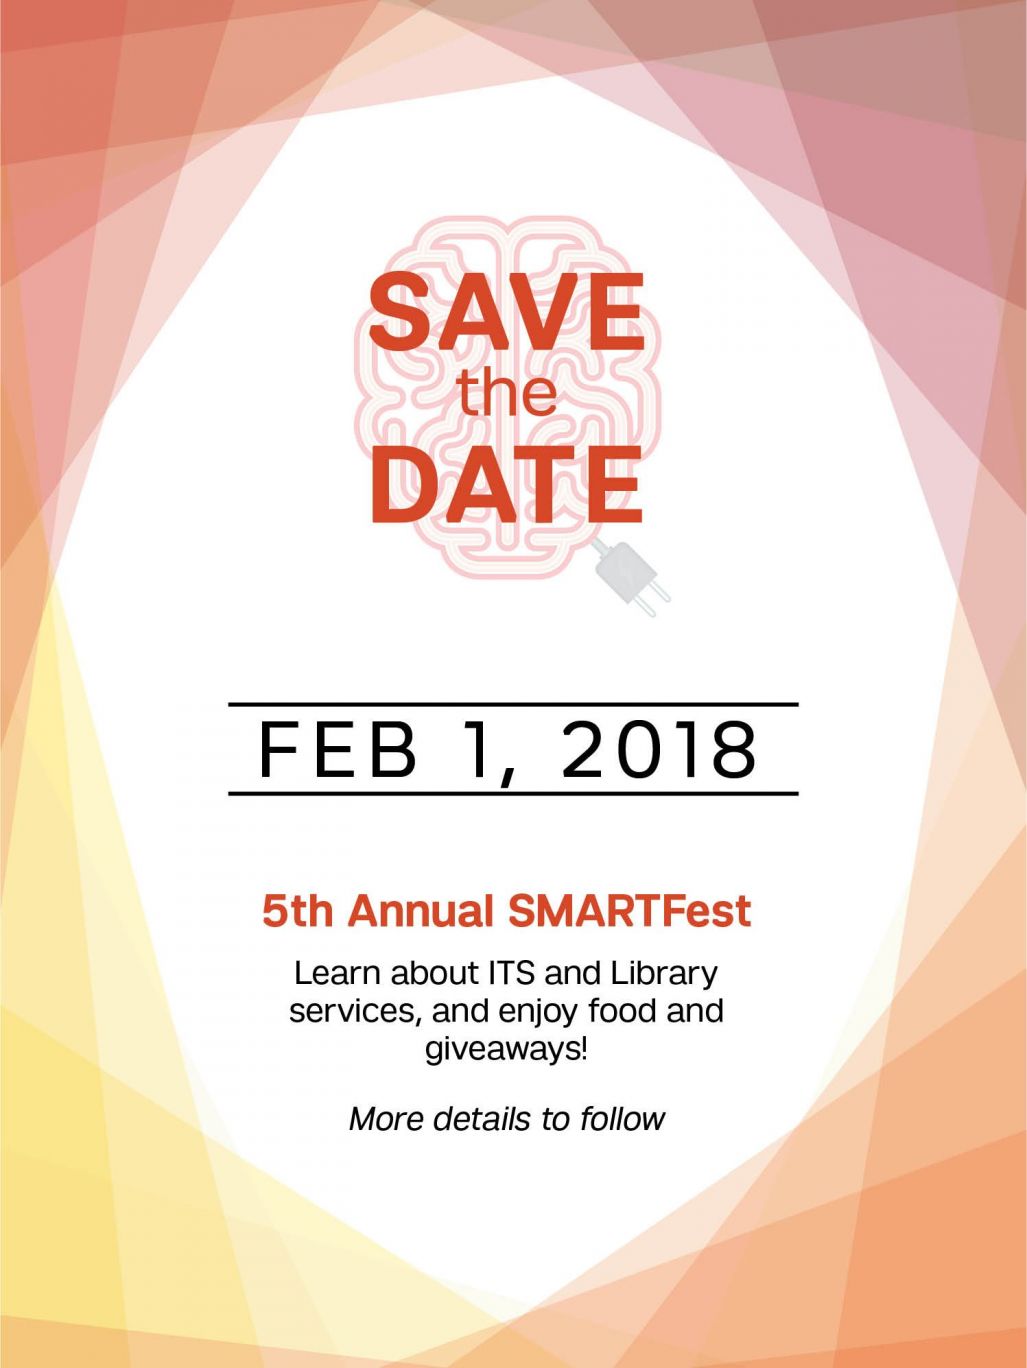 SMARTFest 2018 on Feb. 1